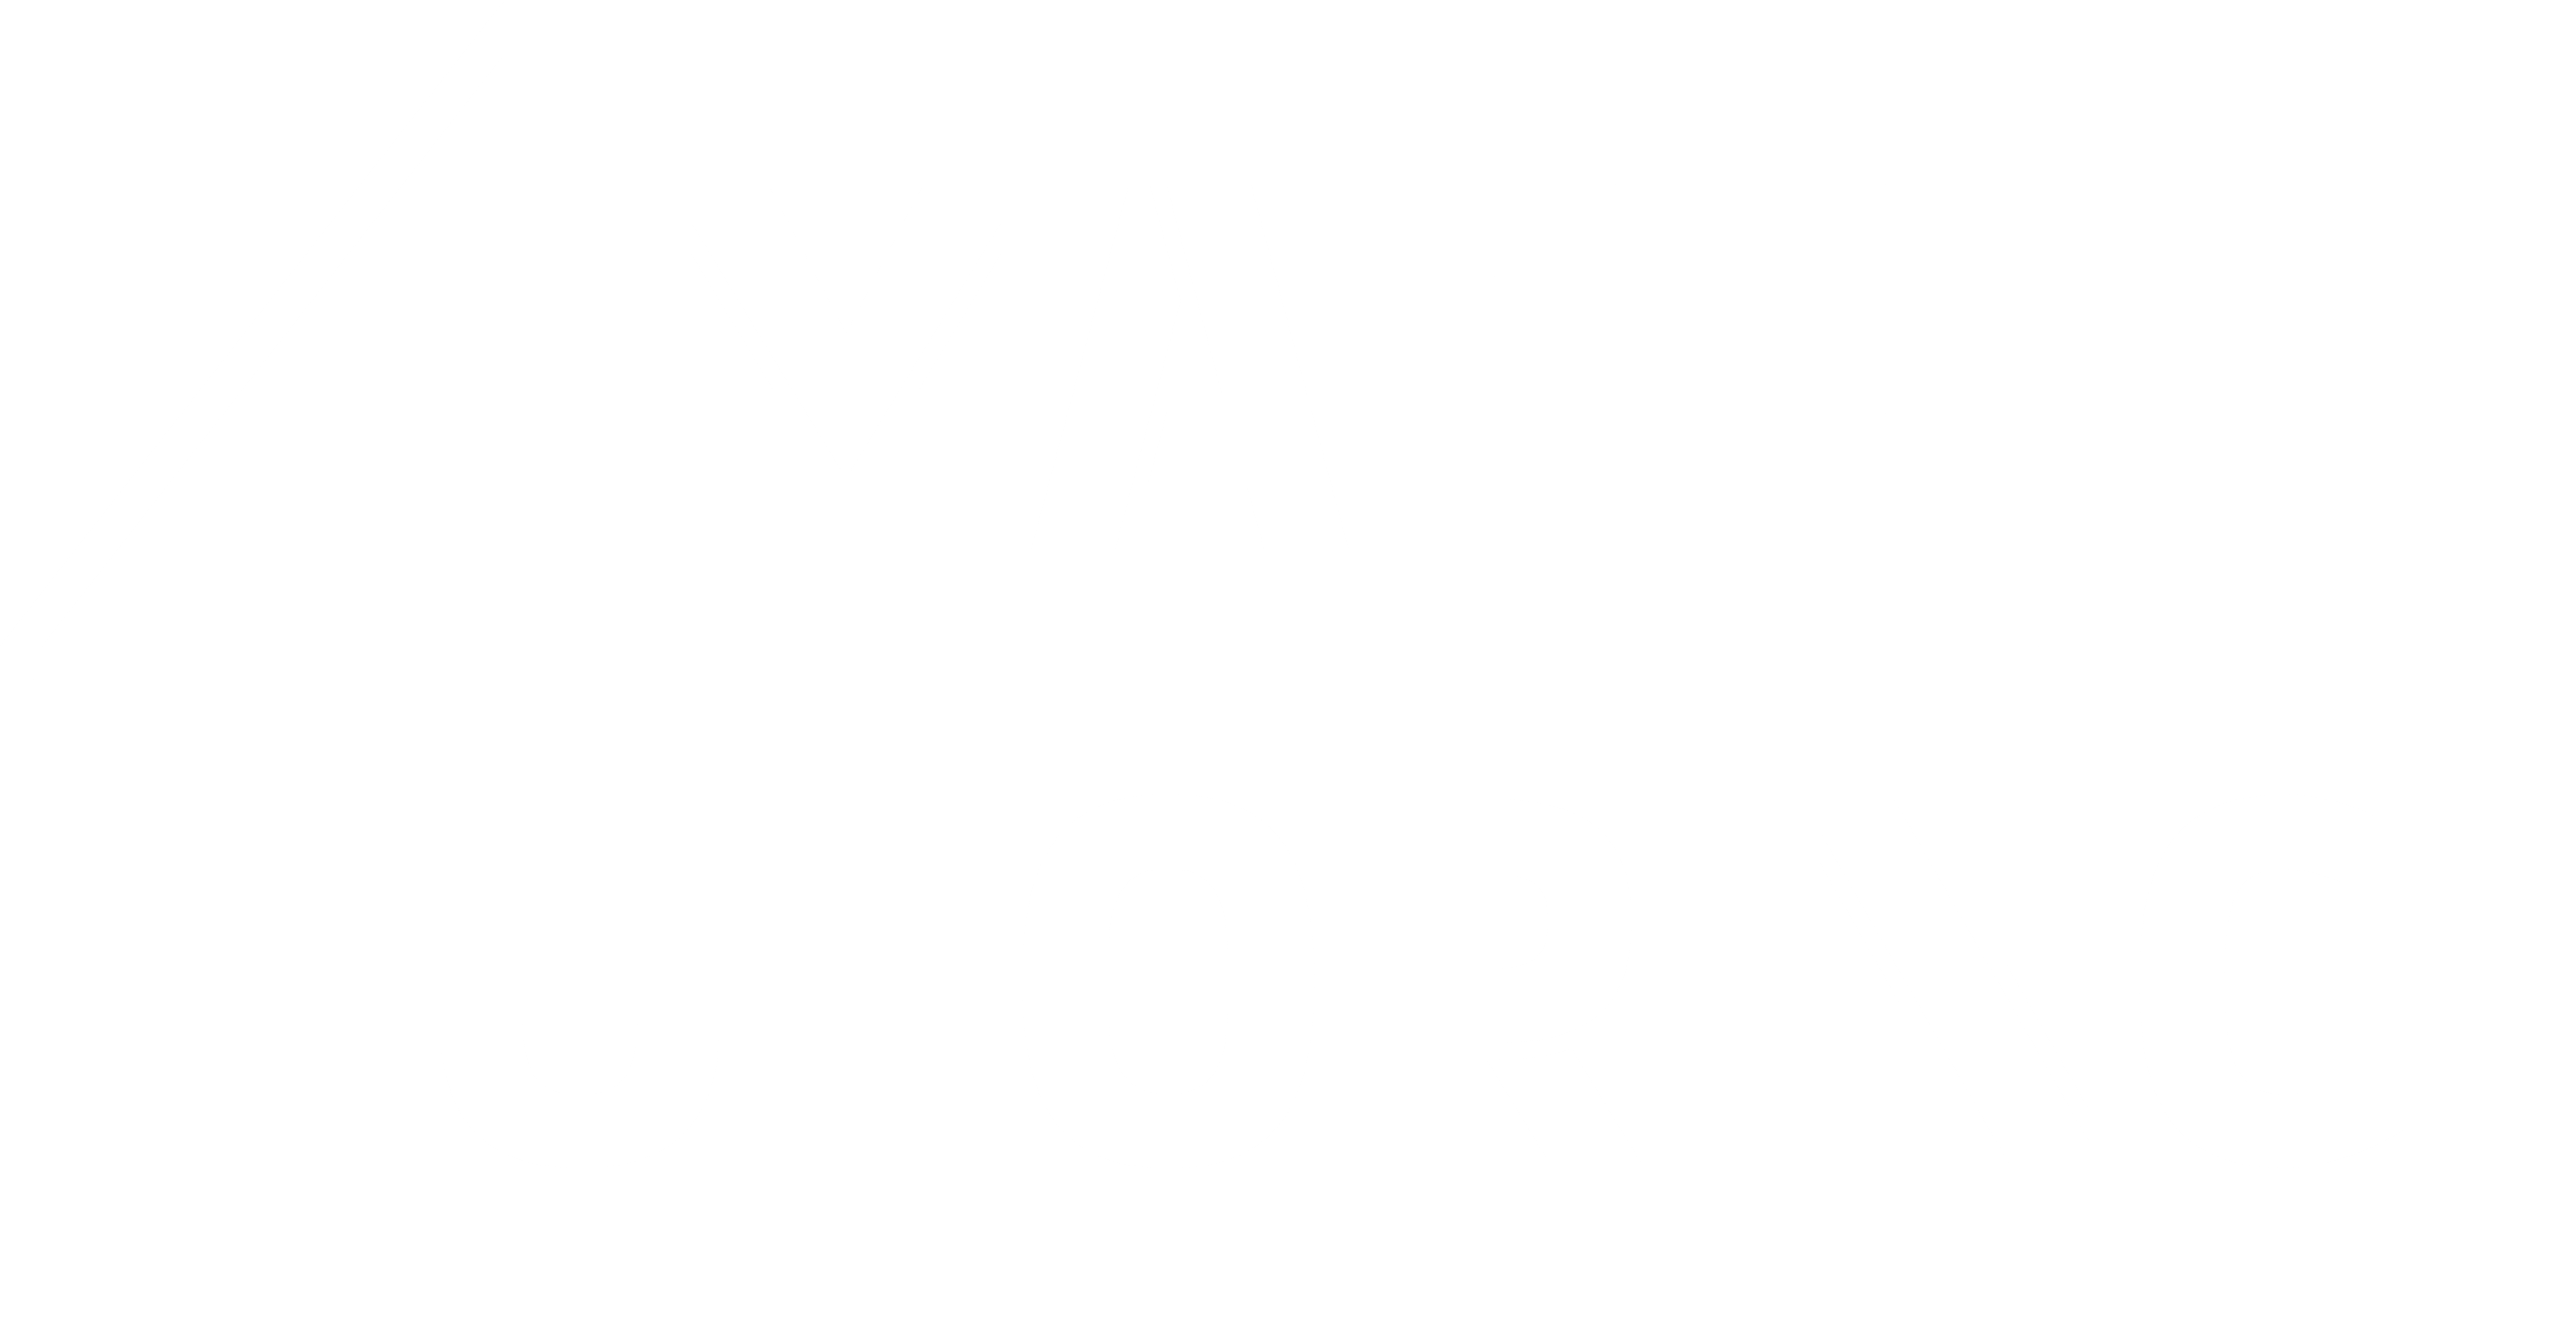 MATH TUTORING és un programa d’enriquiment matemàtic a través de tutories en petit grup que té per finalitat augmentar la competència matemàtica d’alumnat amb dificultats en la matèria i accés limitat a recursos complementaris. L’objectiu últim és maximitzar les oportunitats d’èxit educatiu d’aquest alumnat.